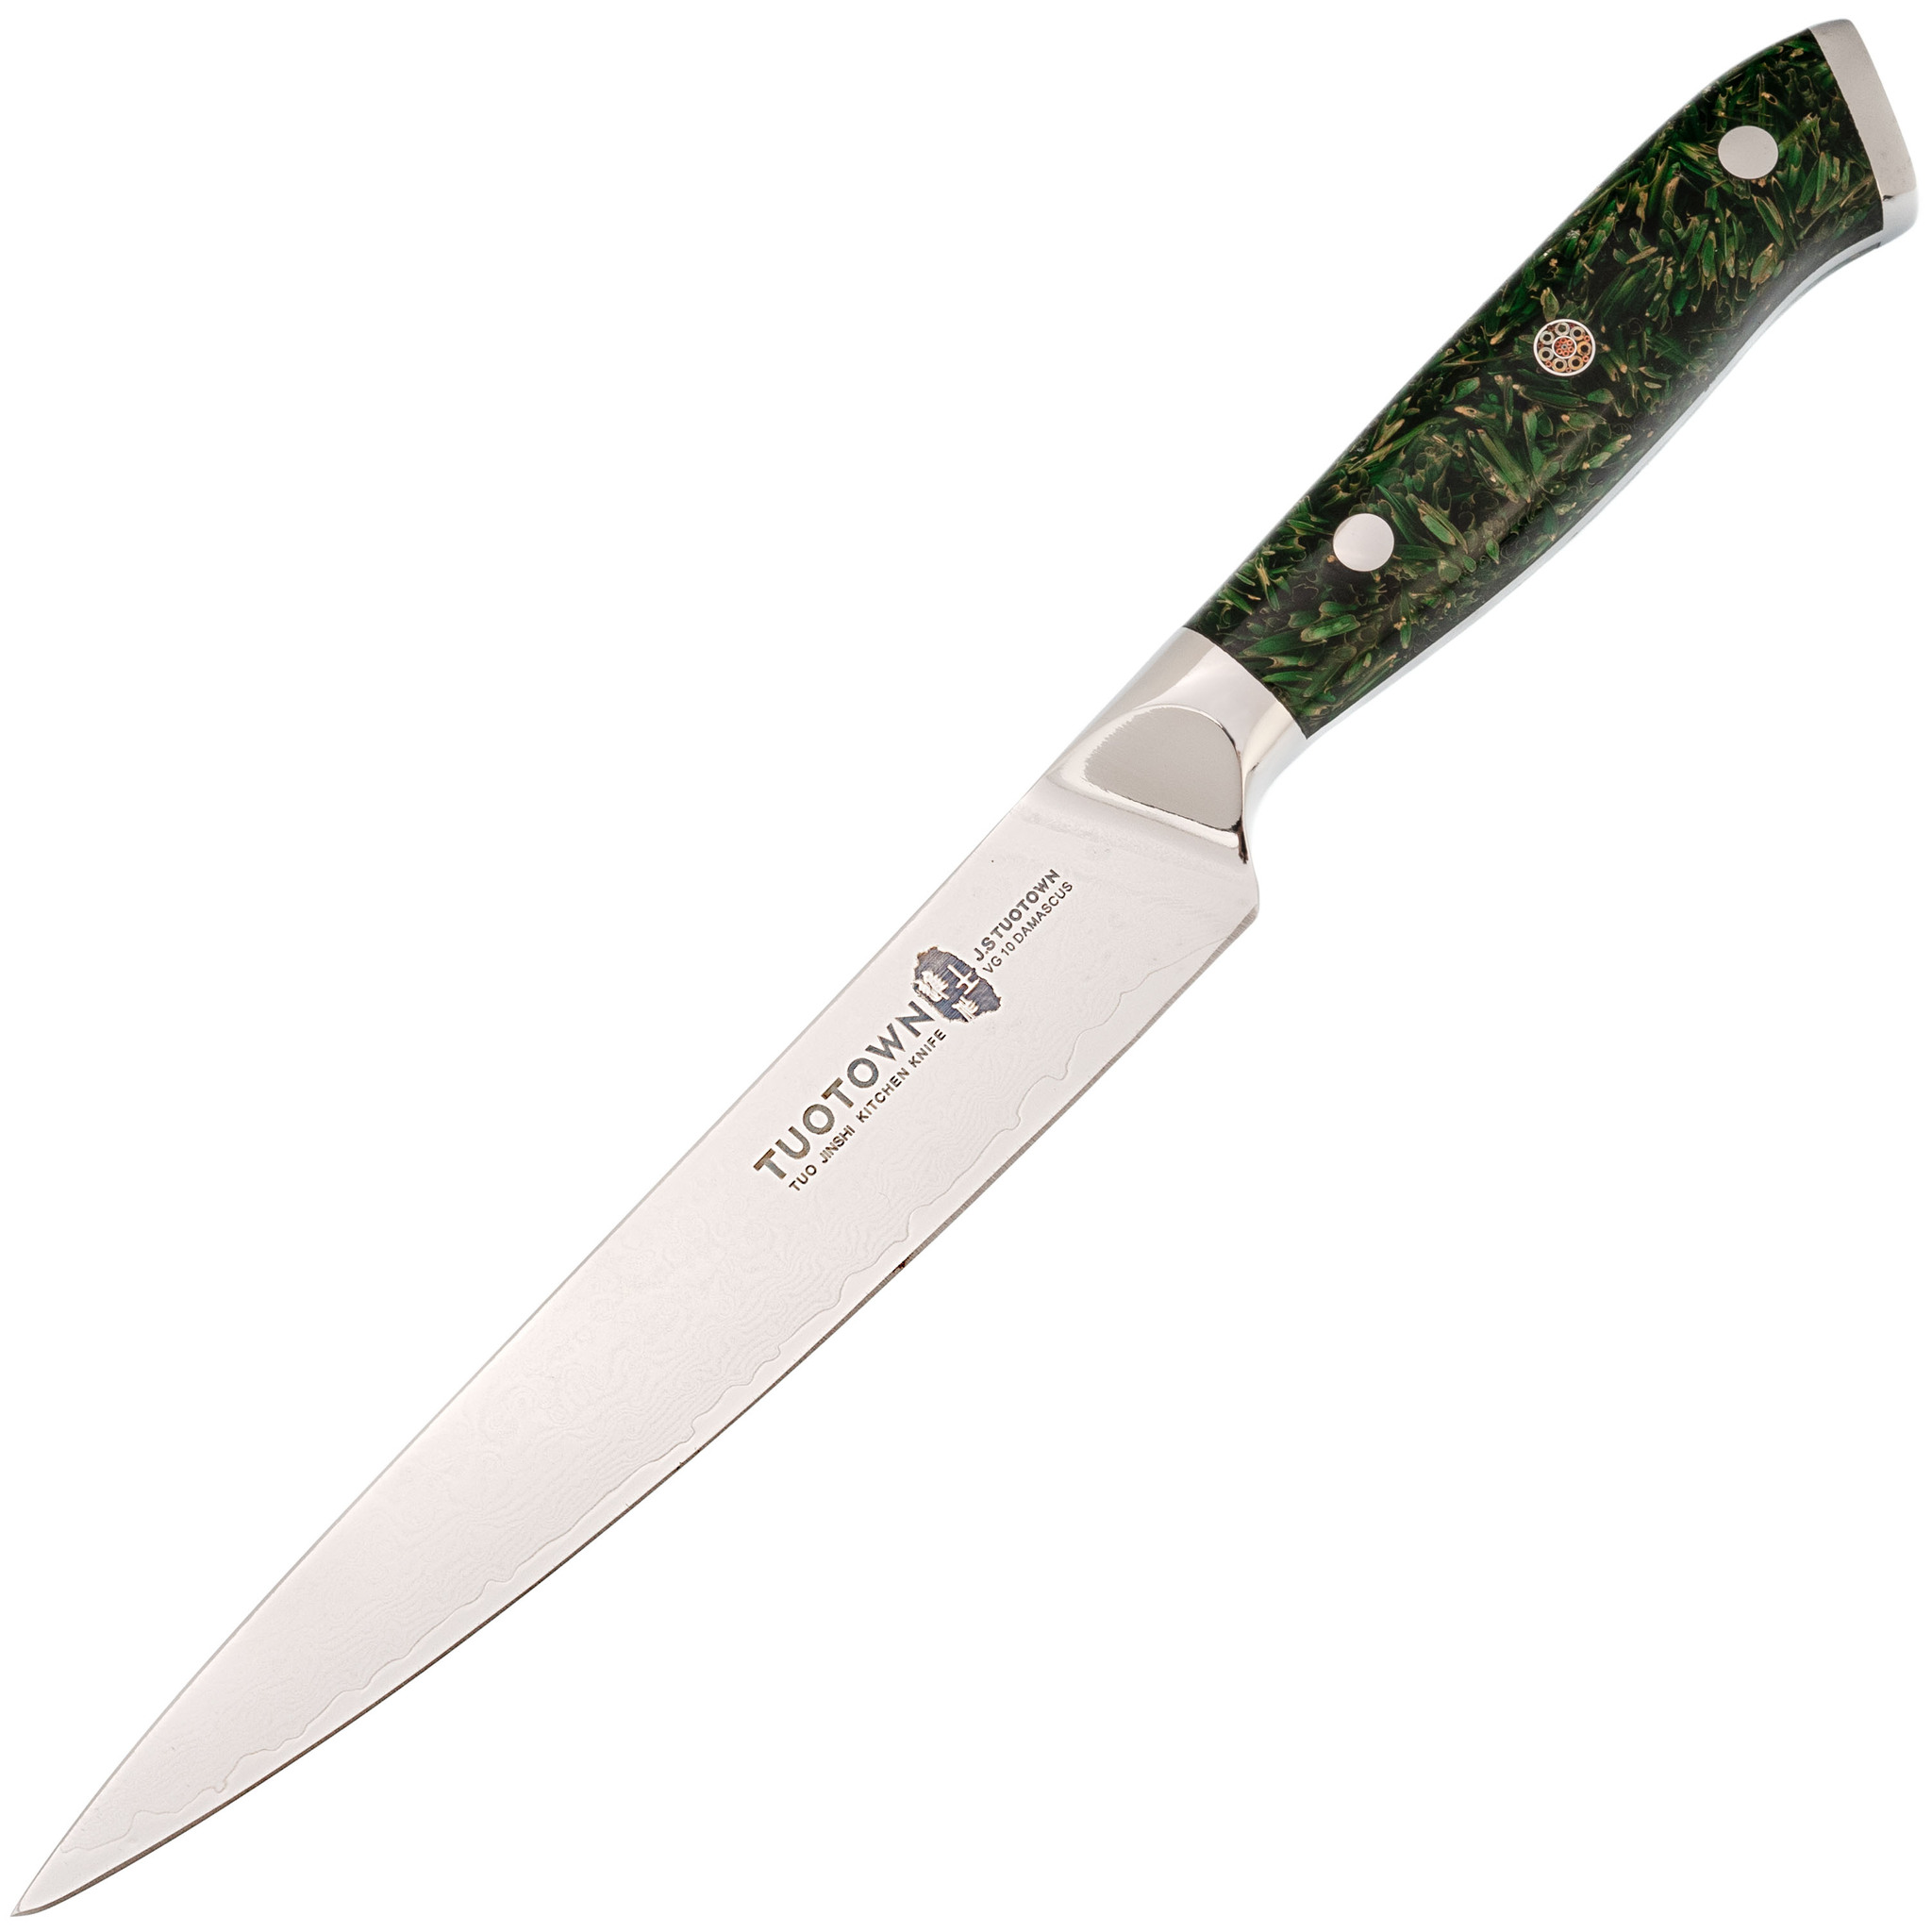 Кухонный нож Tuotown, сталь VG10, обкладка Damascus, рукоять акрил, зеленый, Кухонные ножи, Универсальные